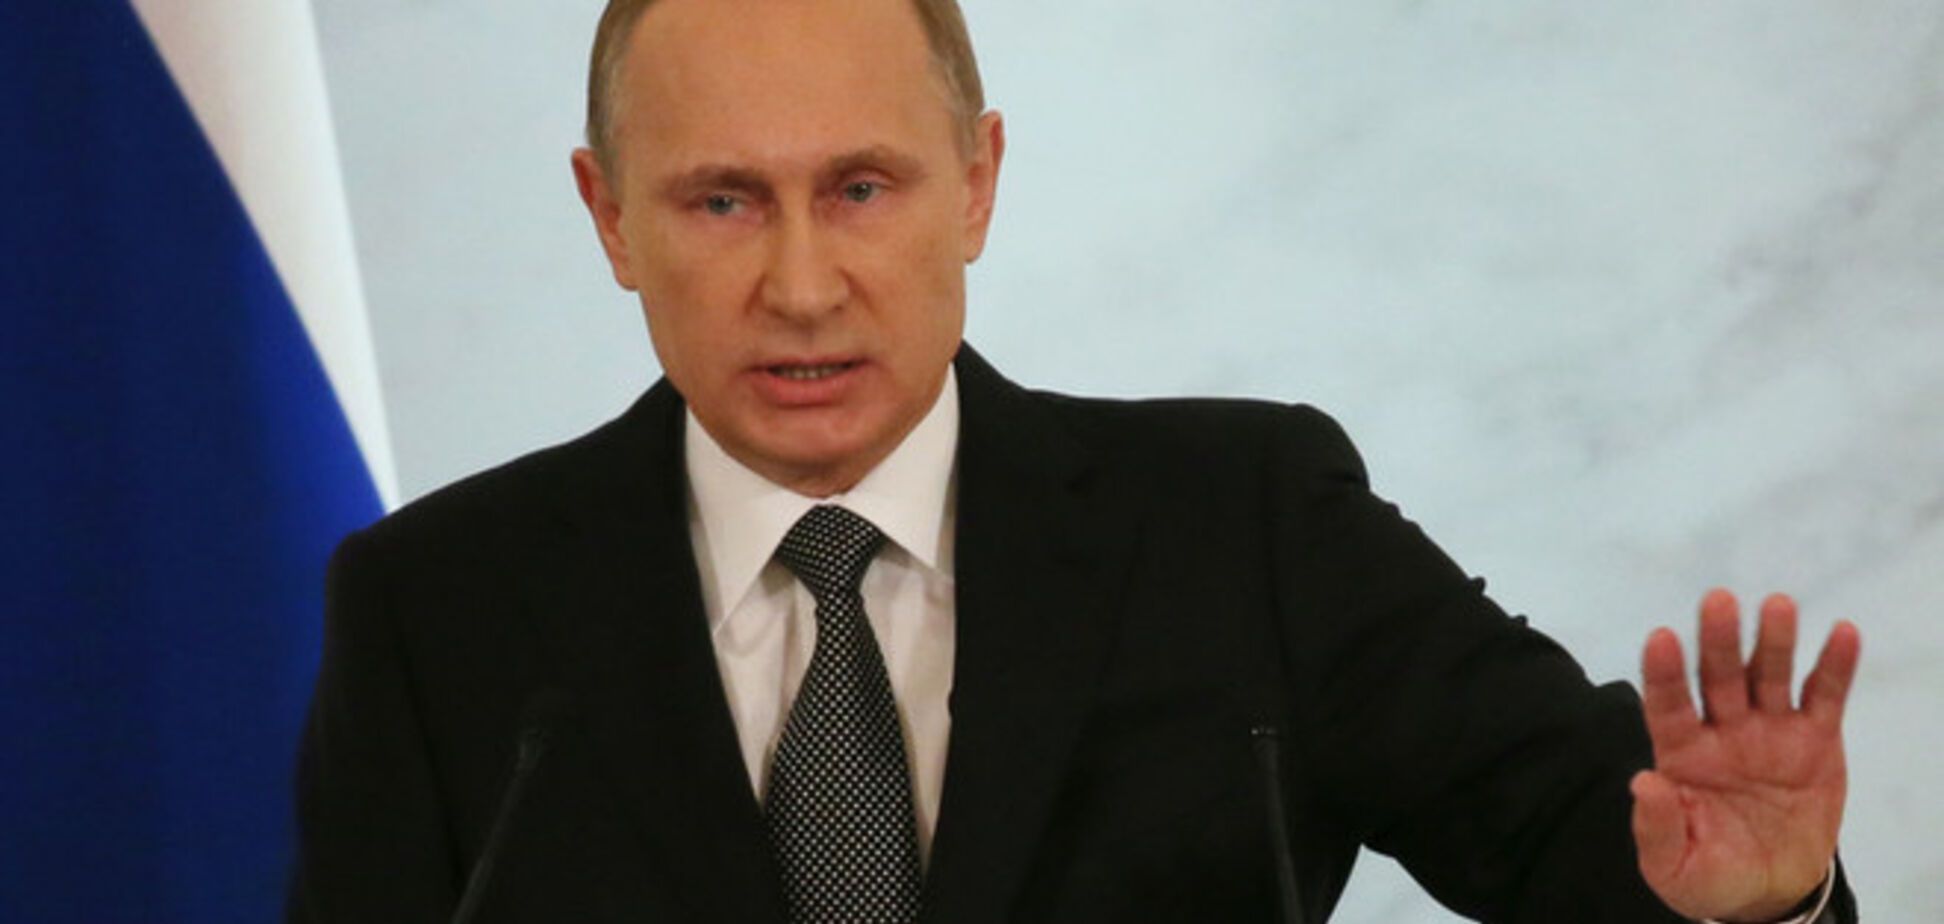 Путин внезапно изменил речь по Украине: стал мягче и дружелюбнее